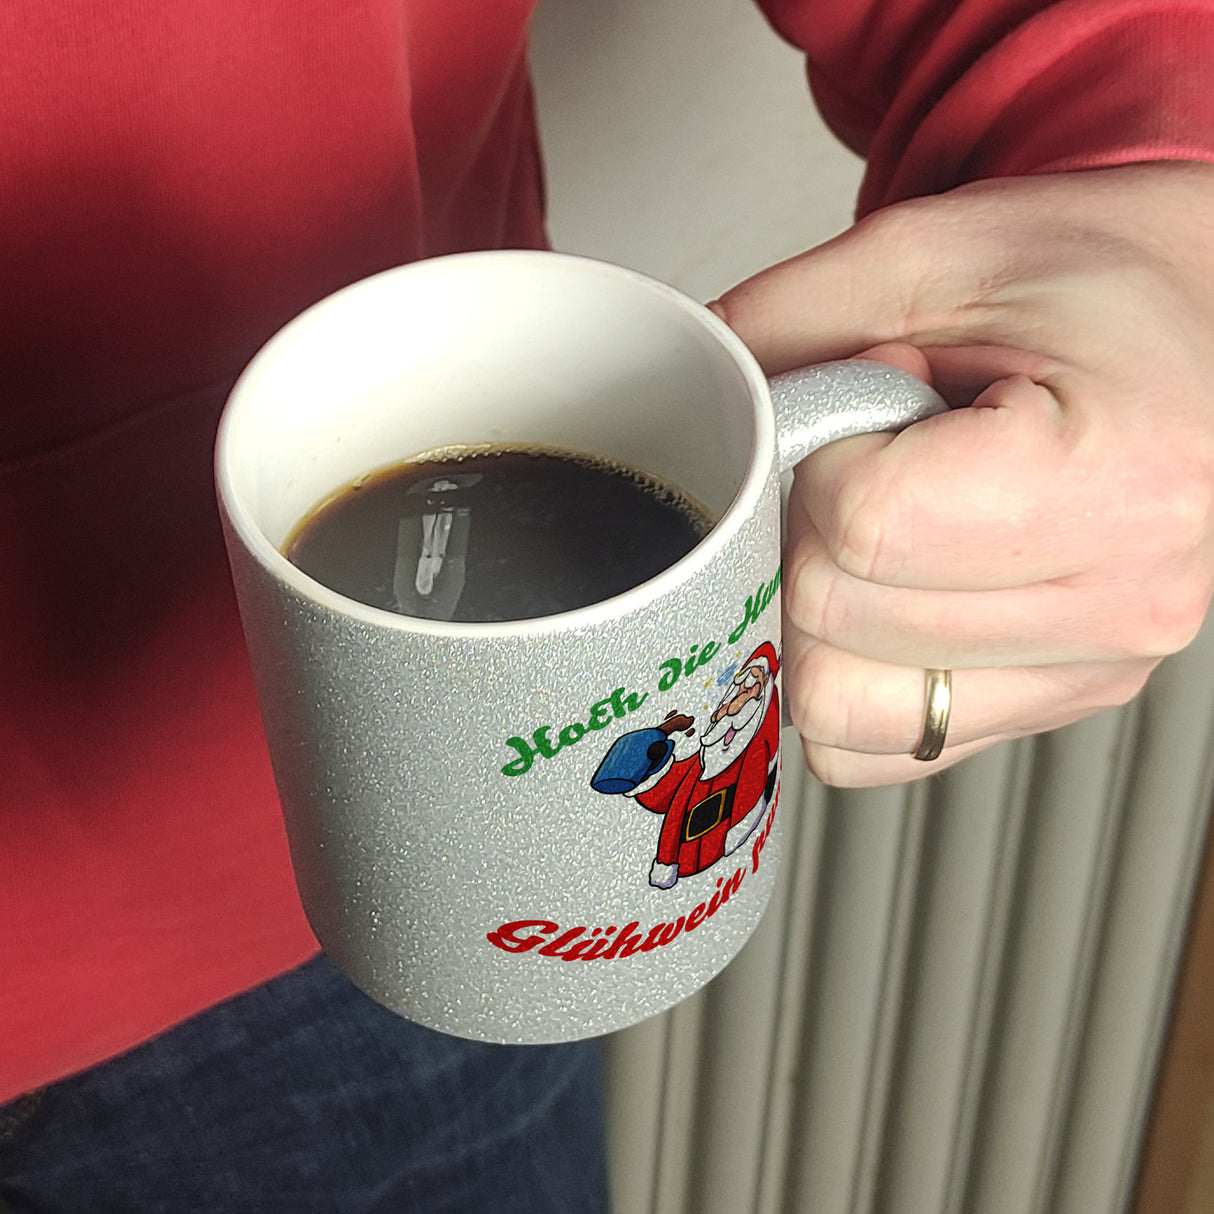 Kaffeebecher mit betrunkenem Weihnachtsmann - Hoch die Humpen, Glühwein pumpen